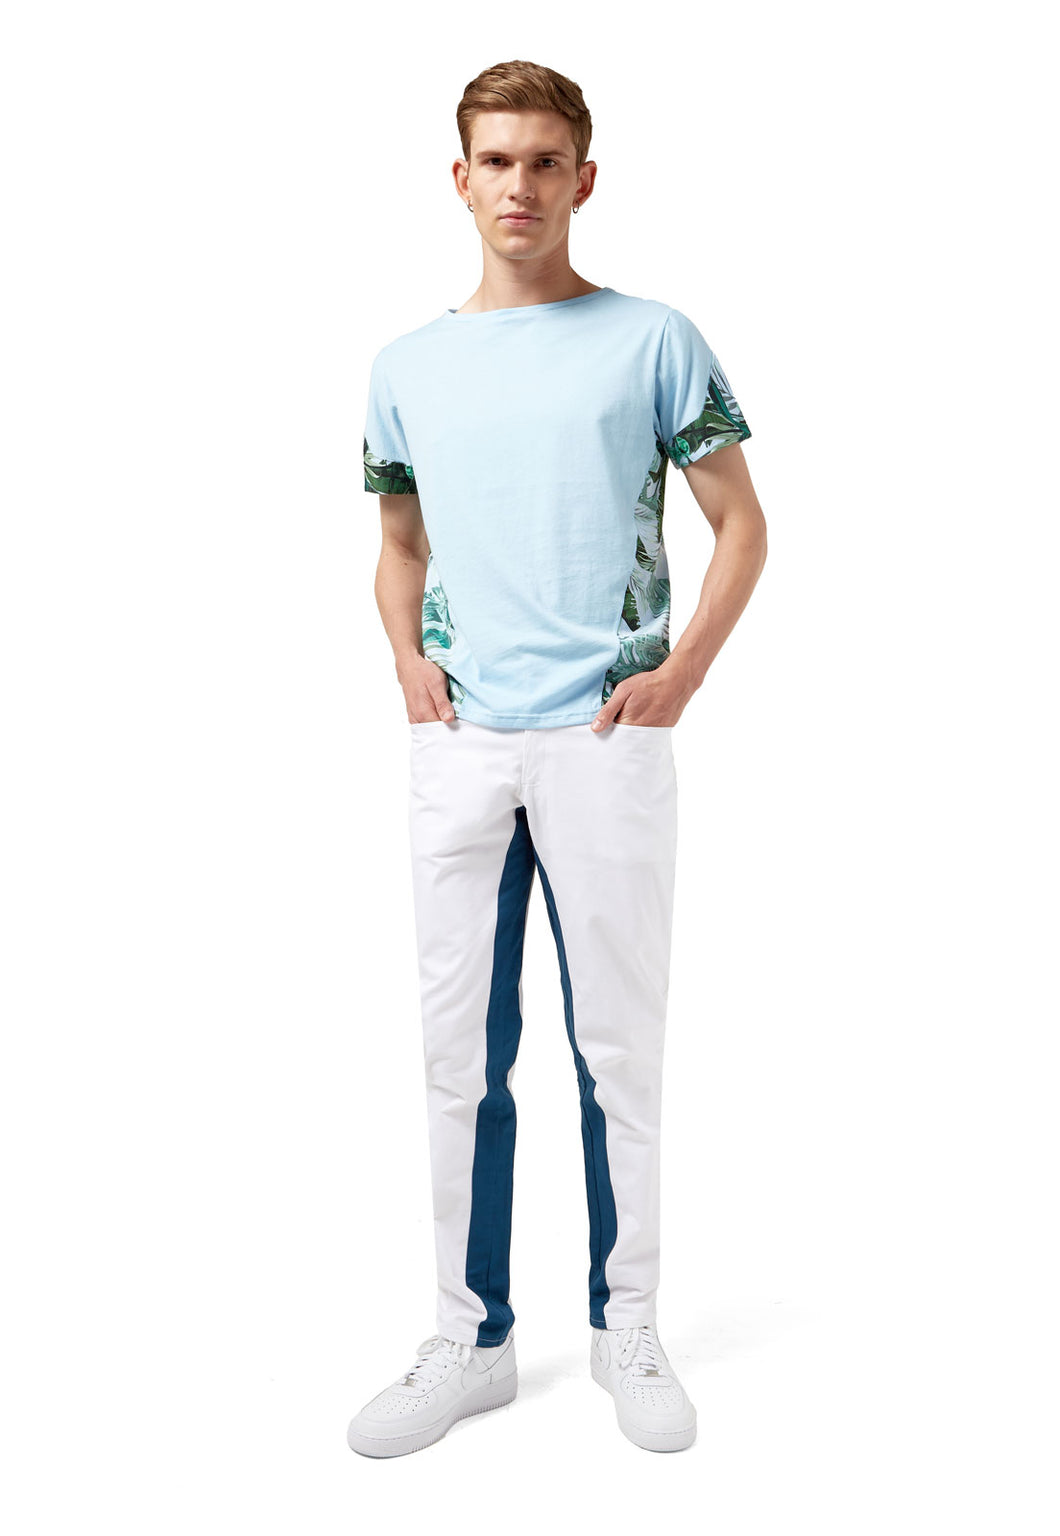 Pantalón estilo moderno para hombre, hecho en Colombia, Comfort Street style Azul y Blanco